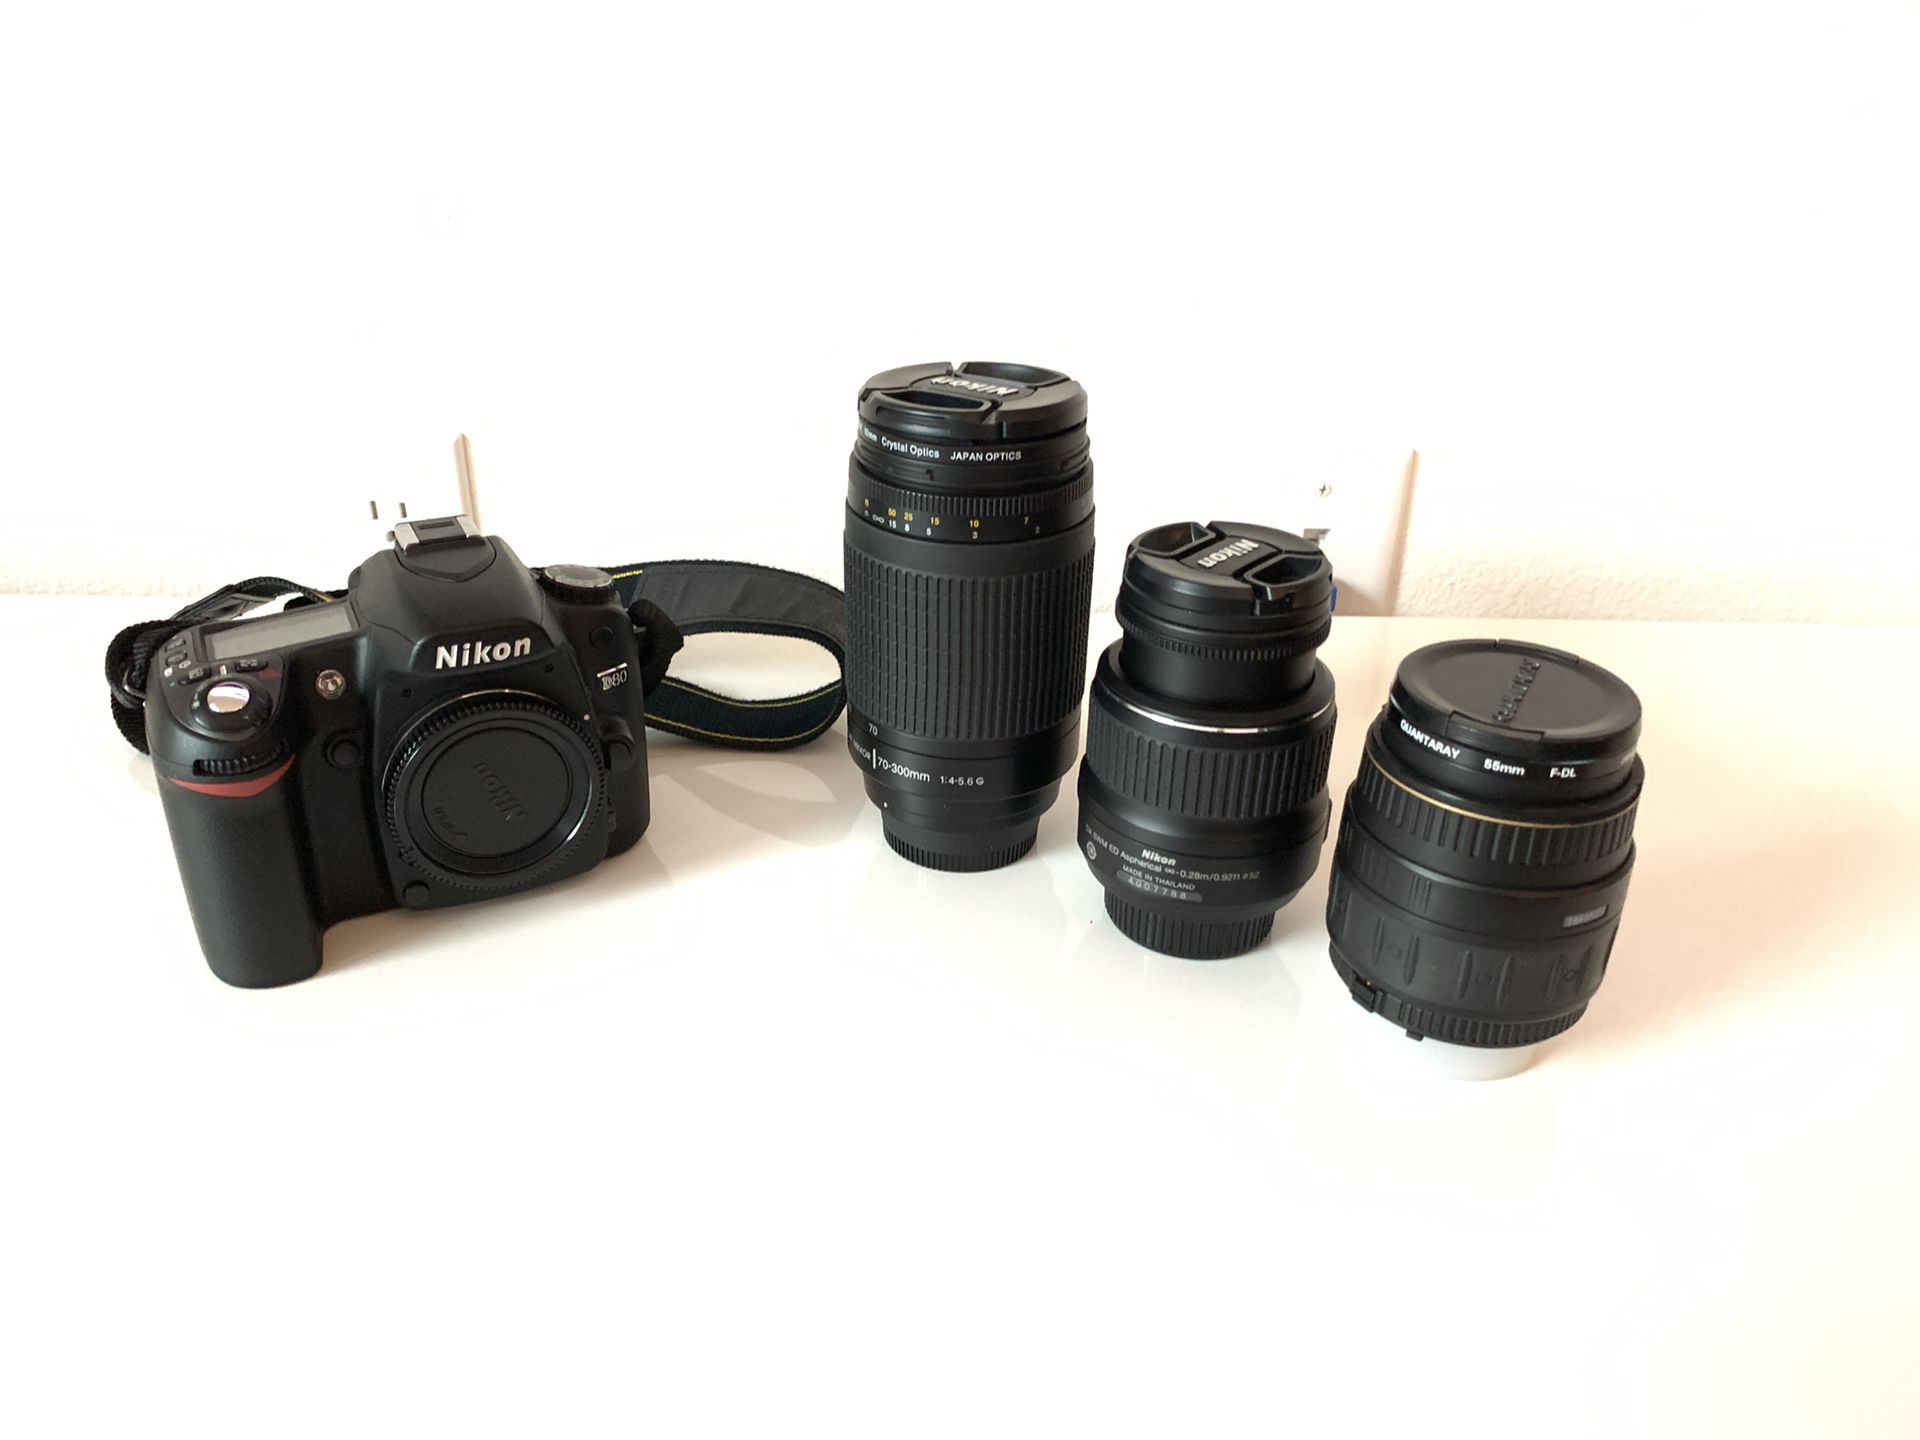 Nikon/Quantaray lenses and accessories